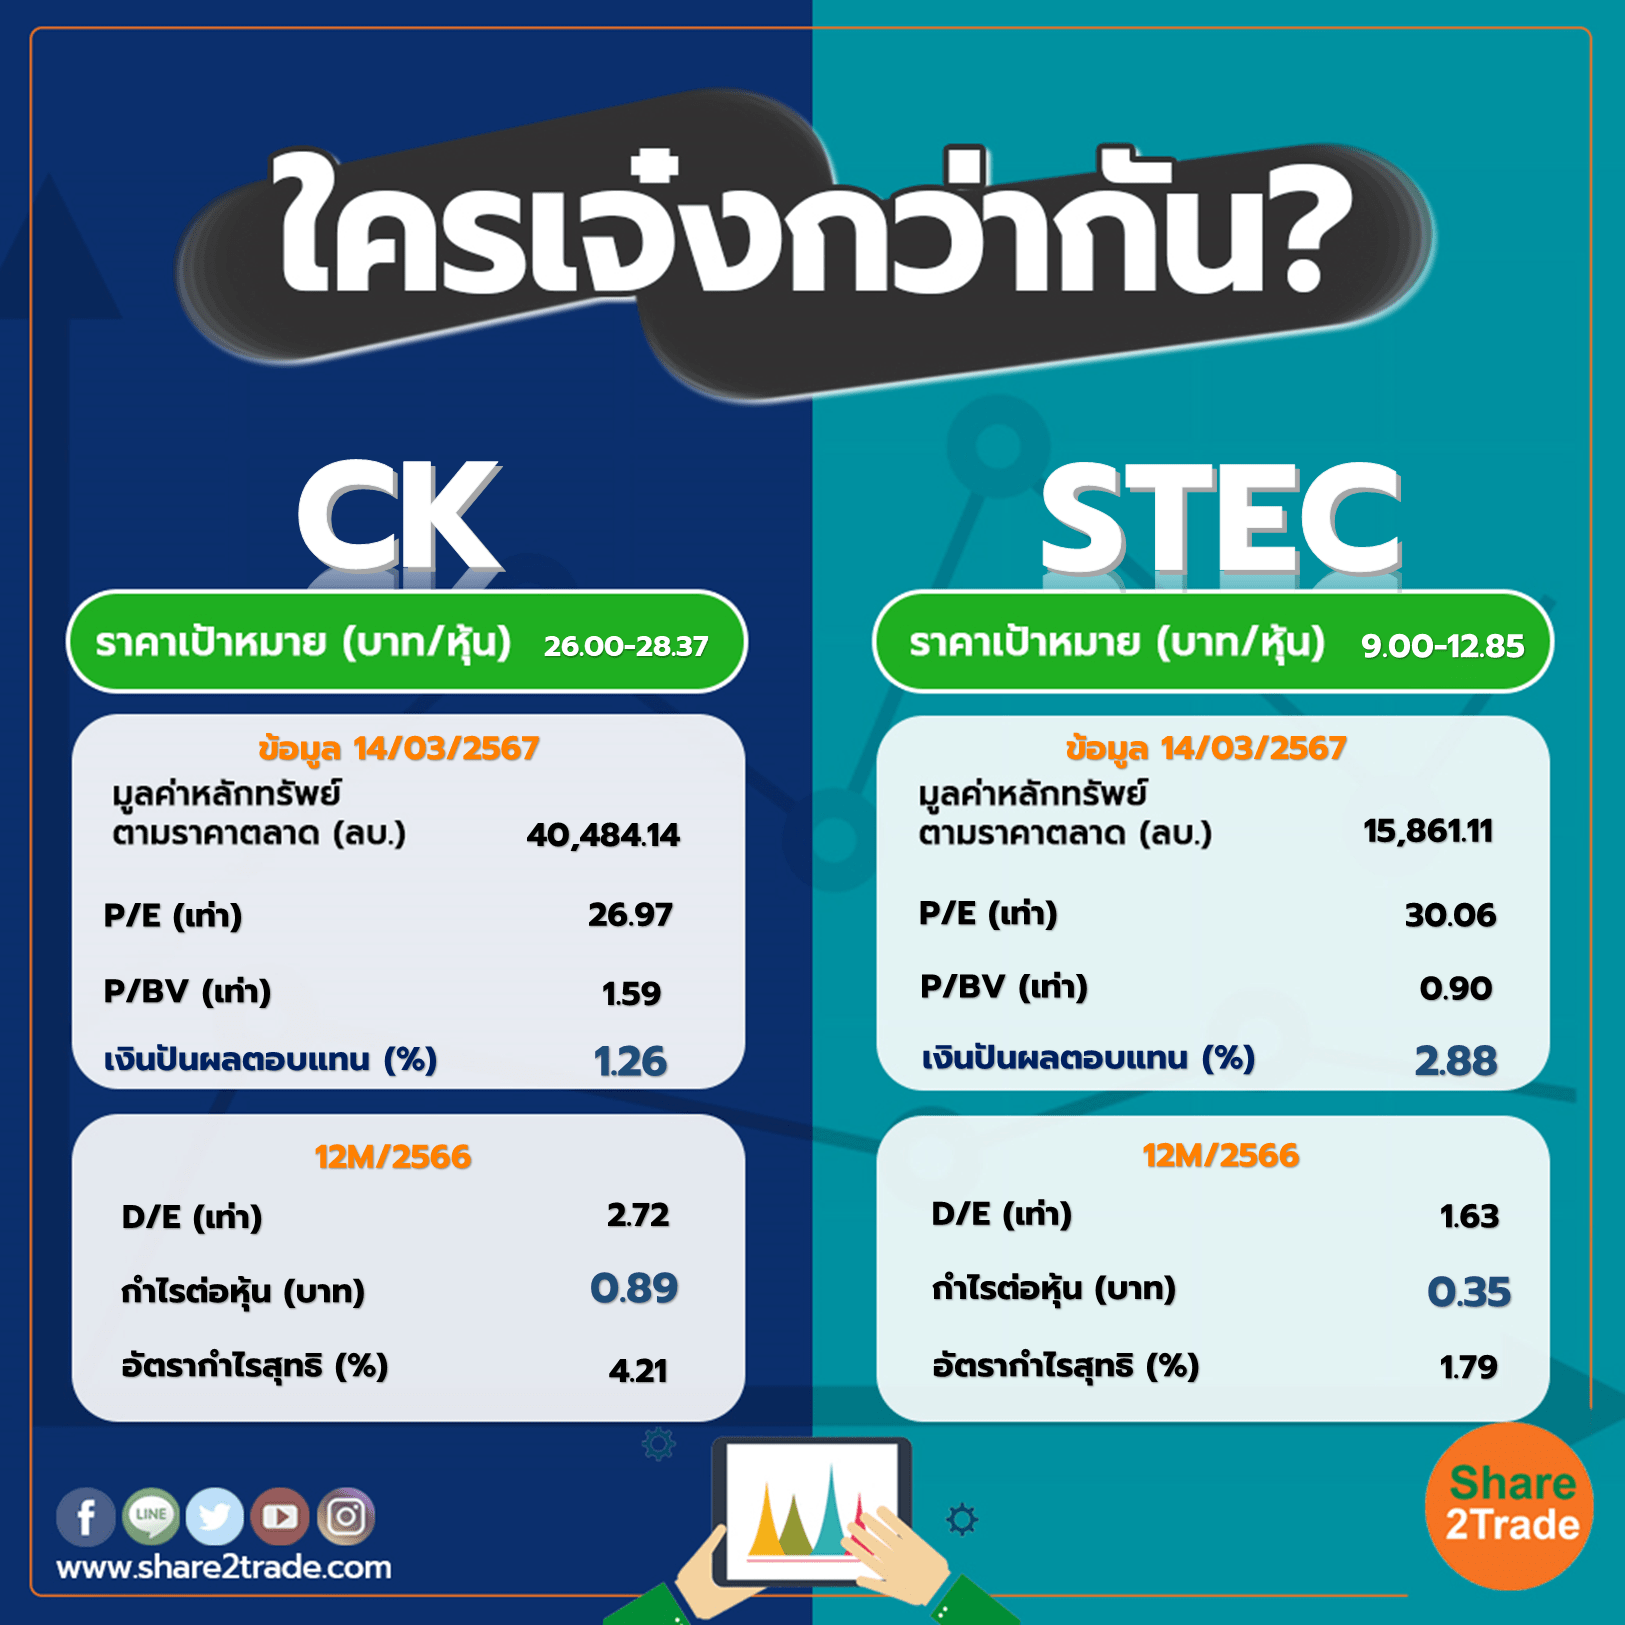 ใครเจ๋งกว่ากัน "CK" VS "STEC"